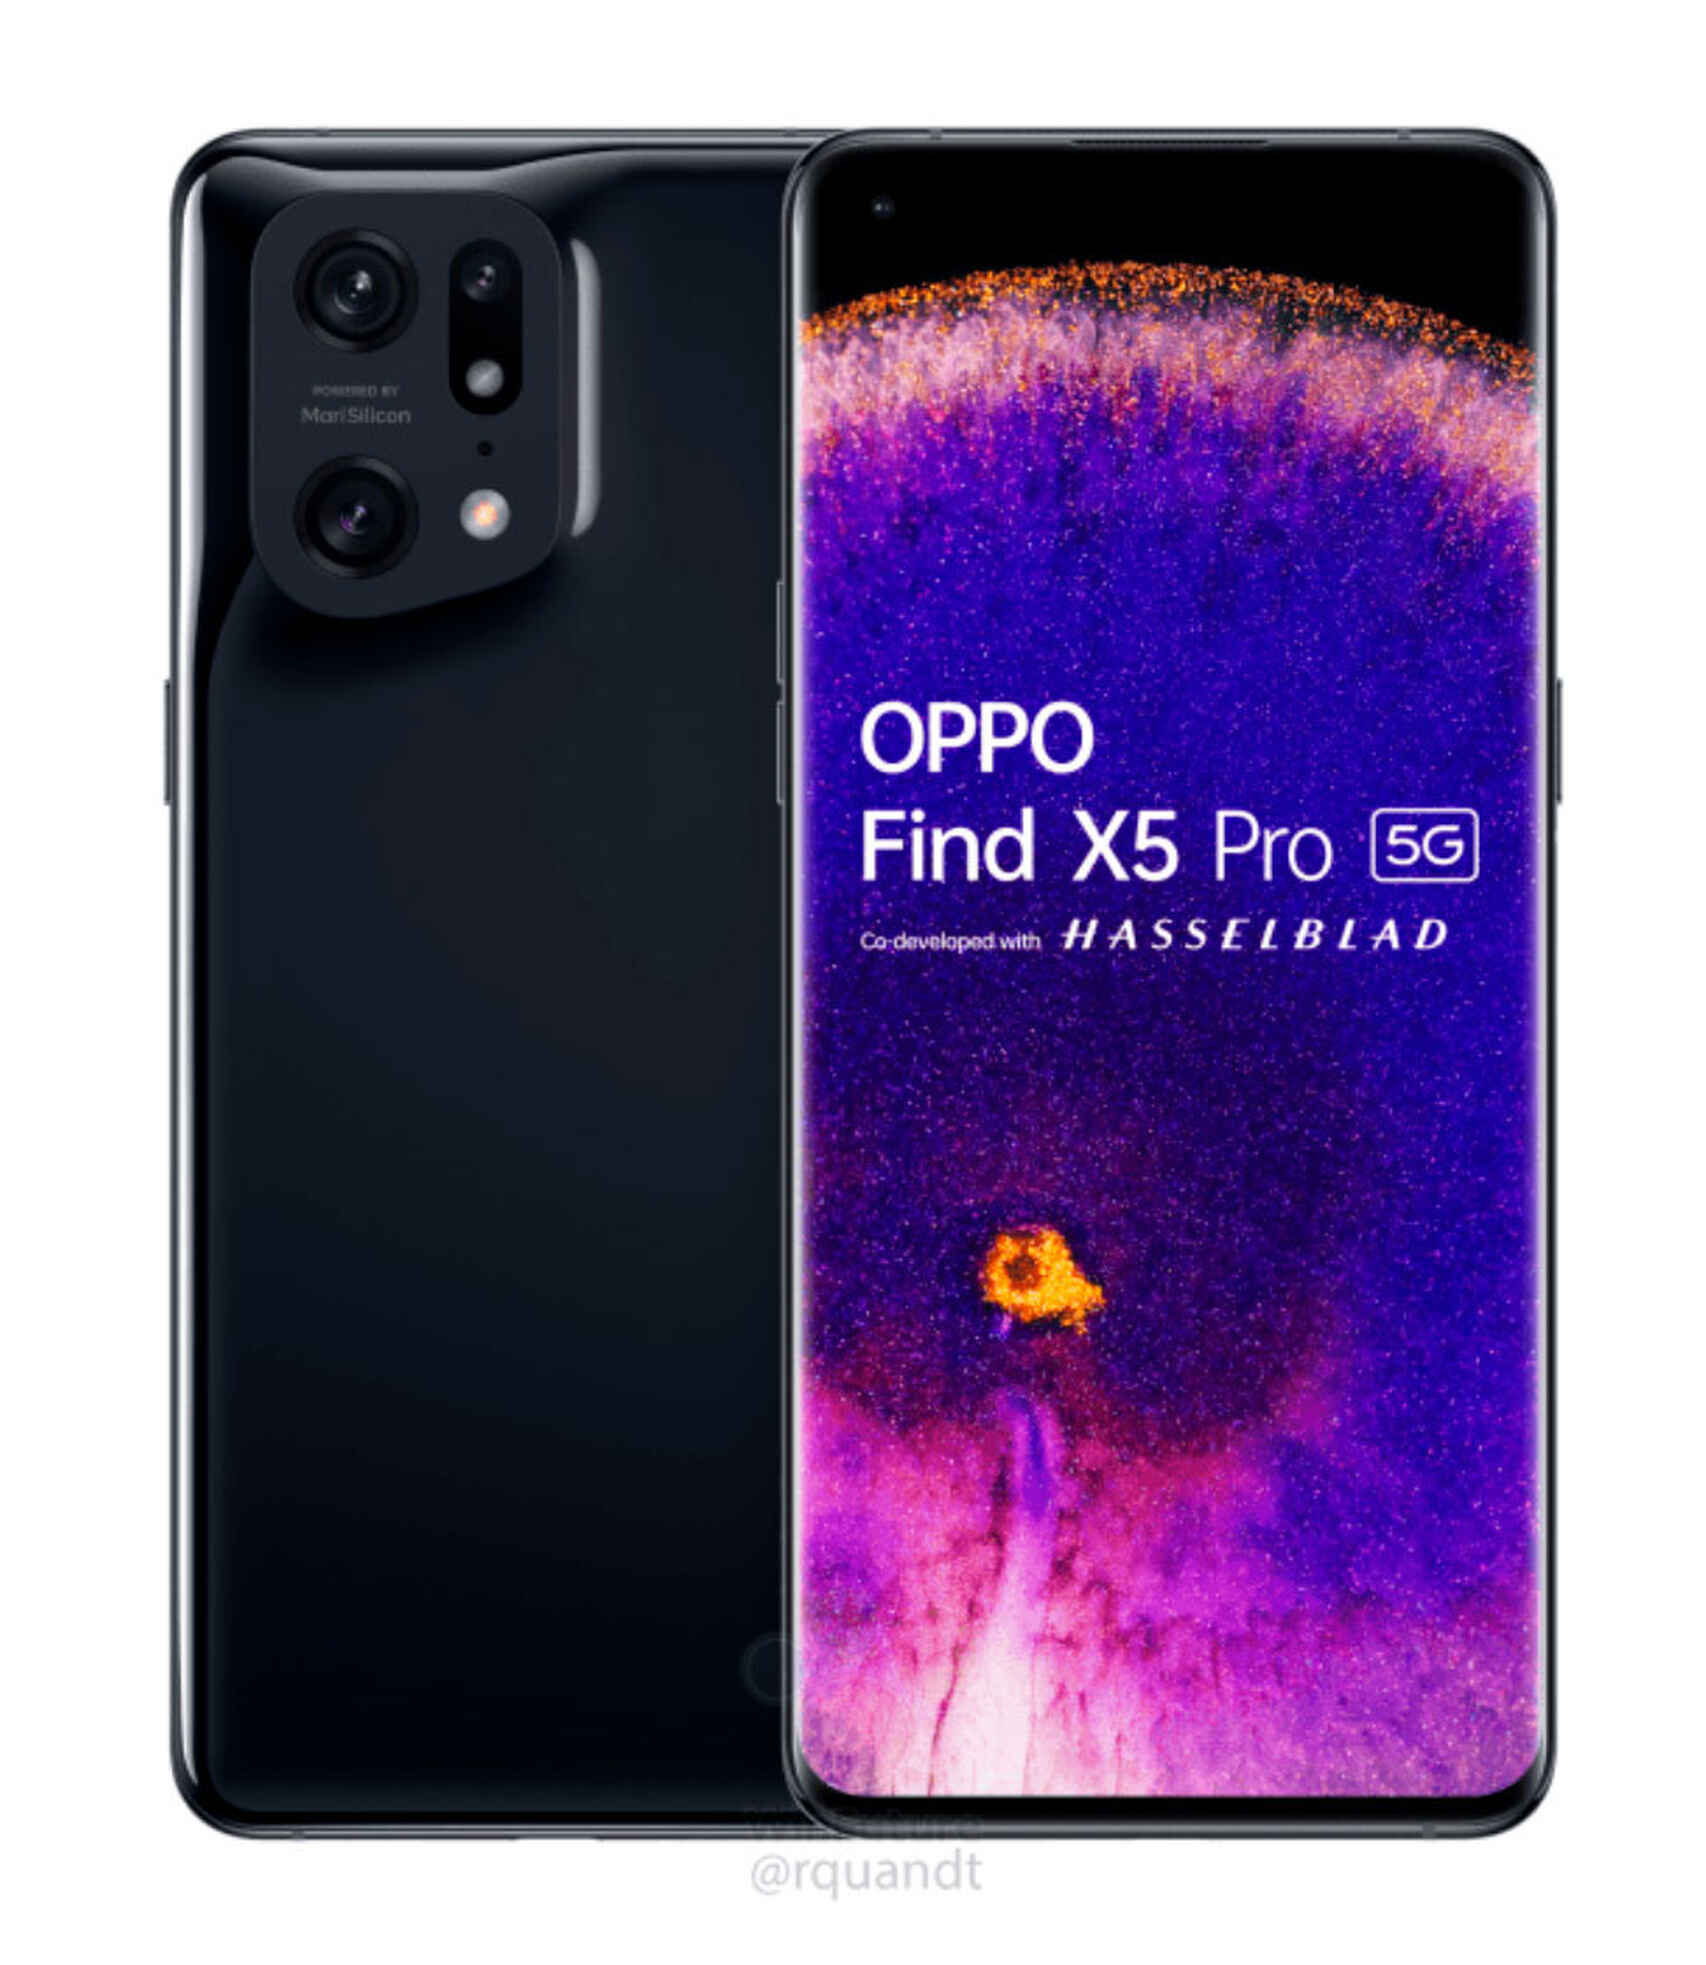 Nuevos OPPO Find X6 y X6 Pro: características, precio y toda la información  oficial